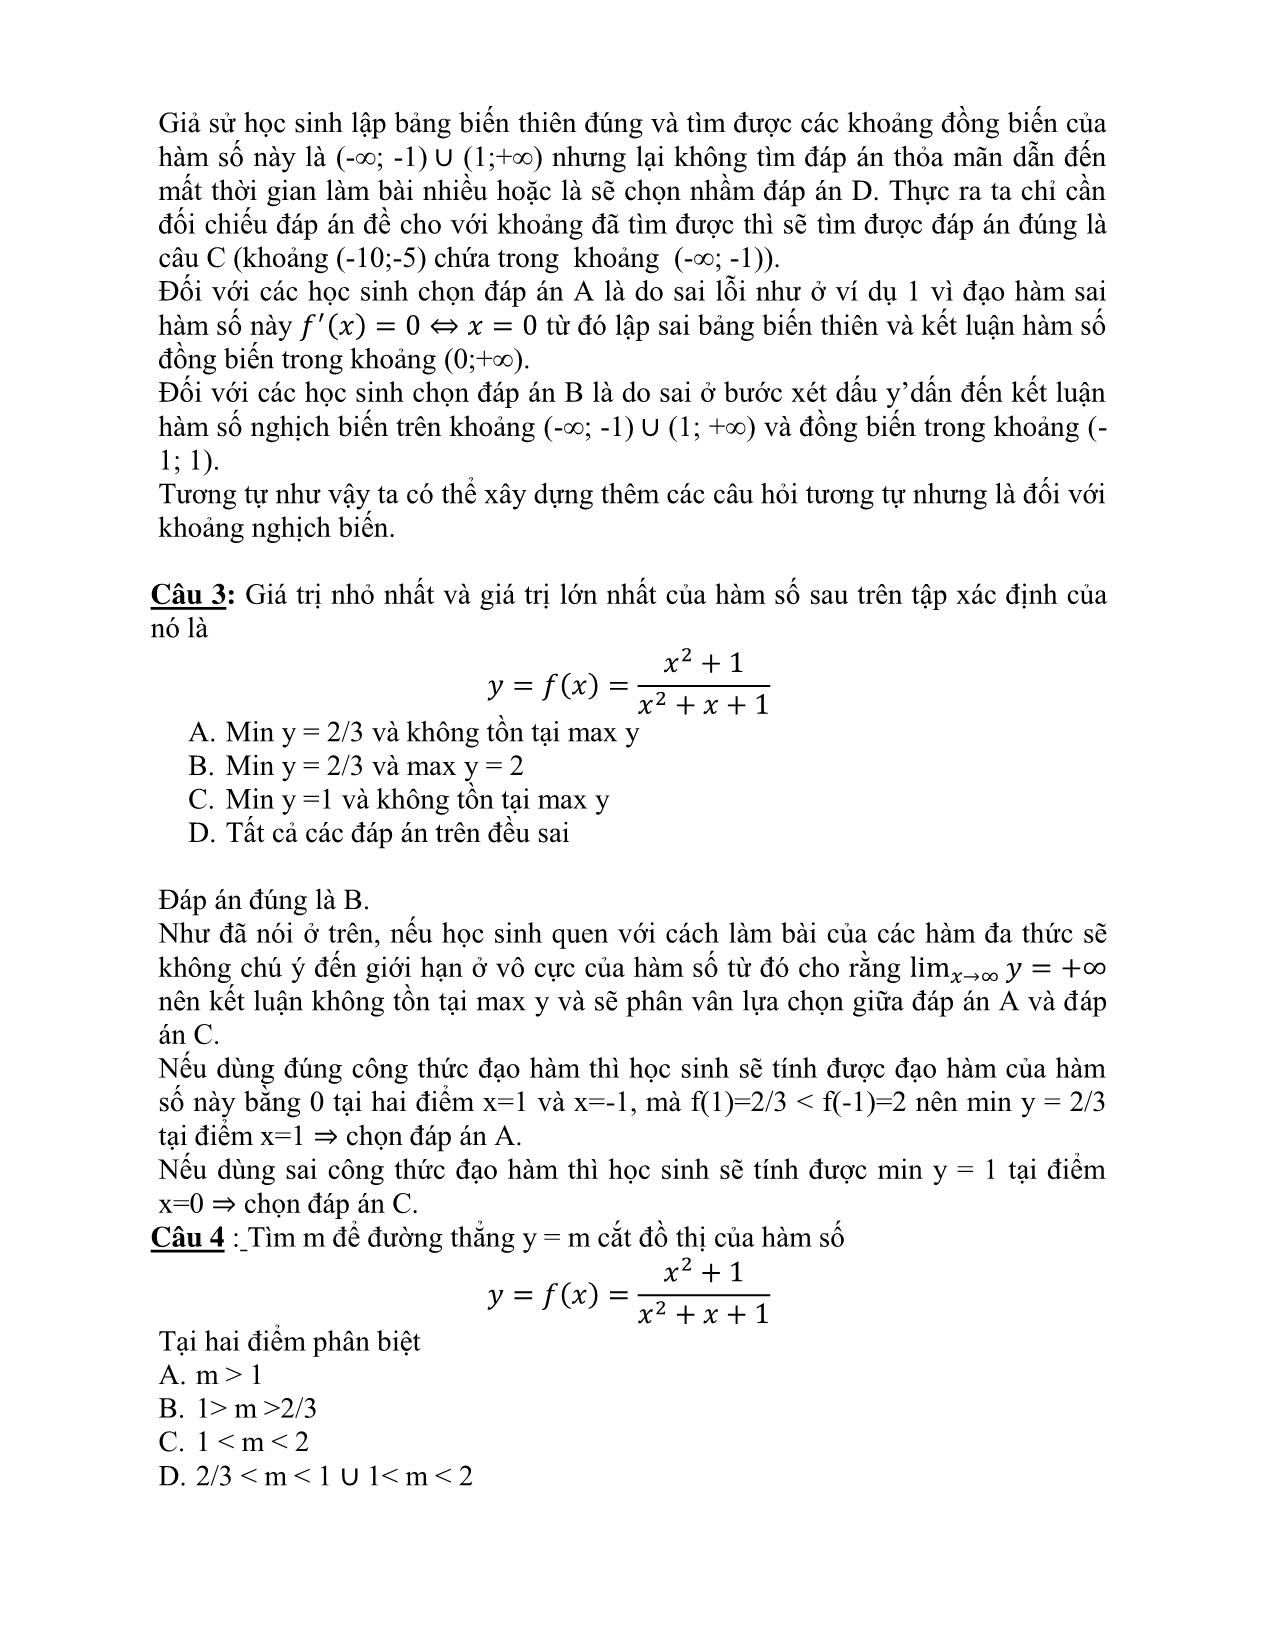 Đề tài Xây dựng câu hỏi khách quan từ bài toán tự luận trang 5